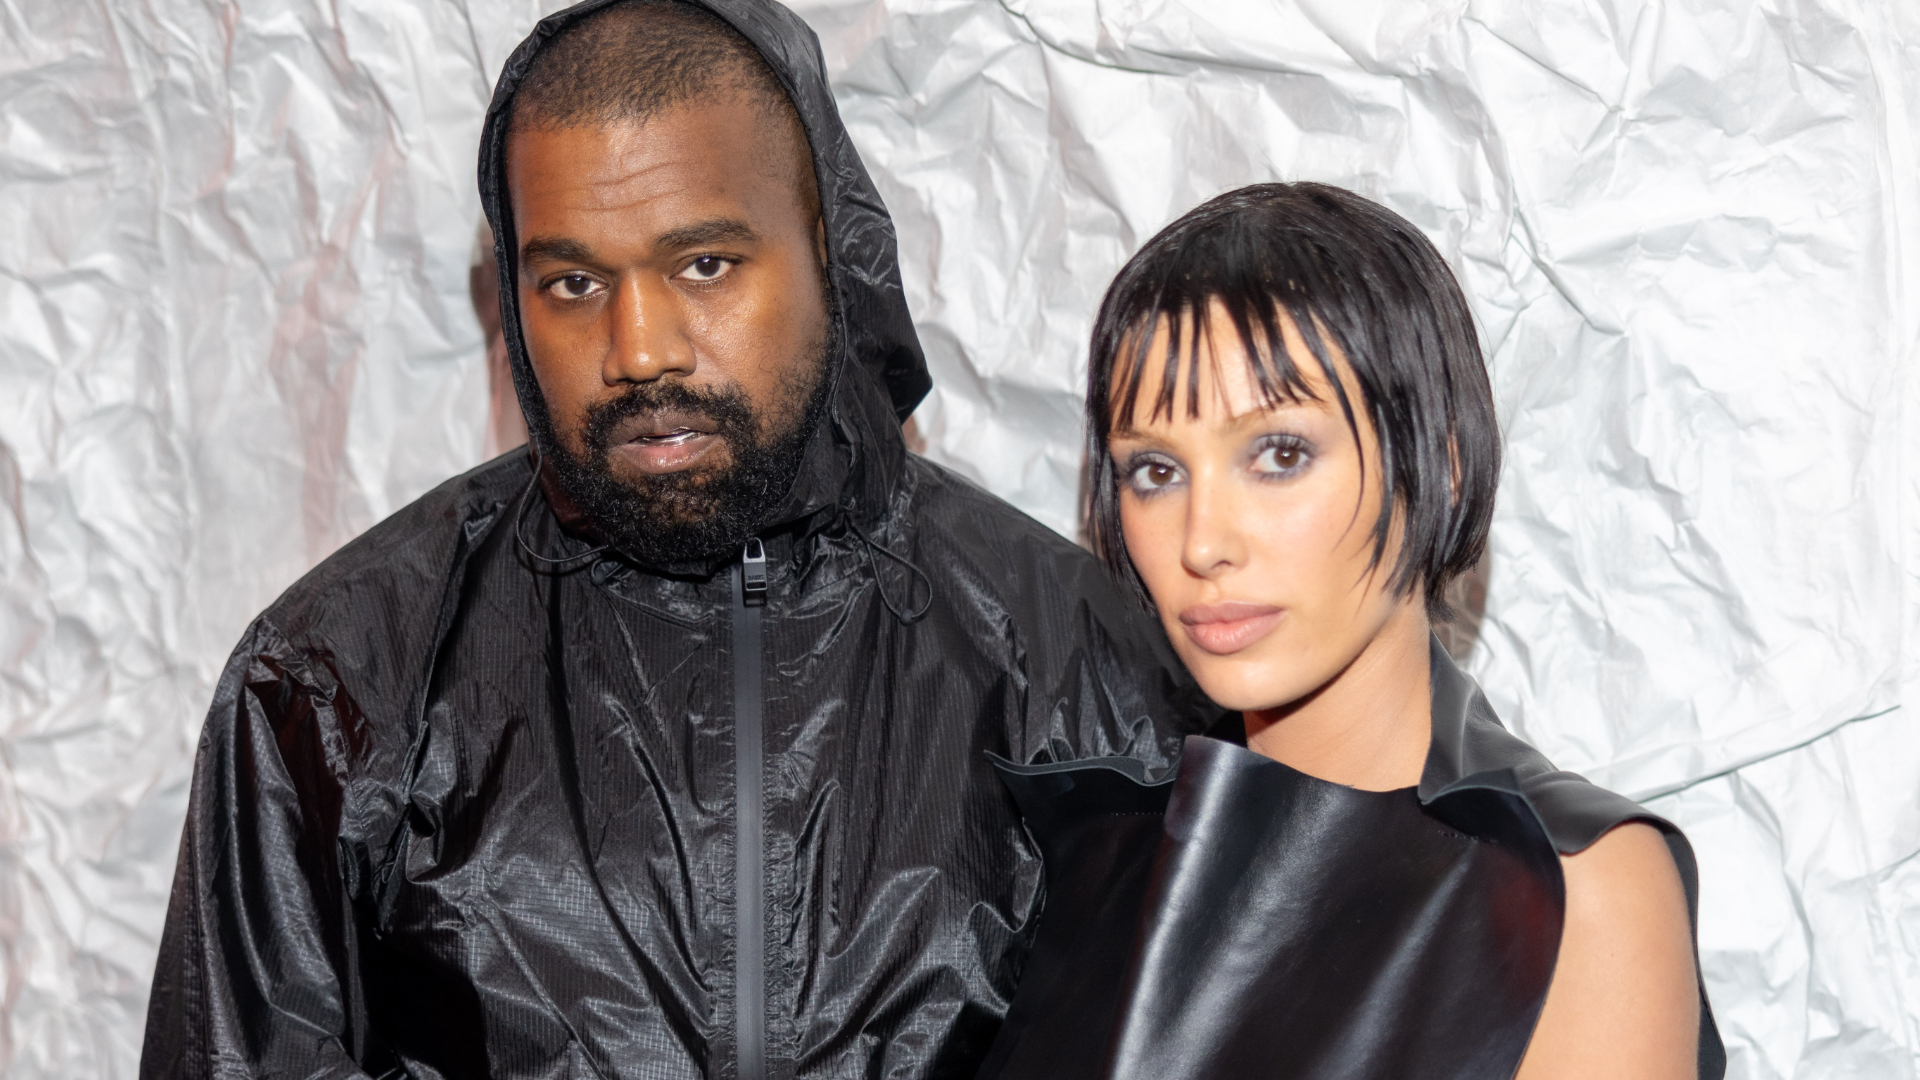 Bianca Censori, esposa de Kanye West, choca ao mostrar a parte íntima por completo na Paris Fashion Week